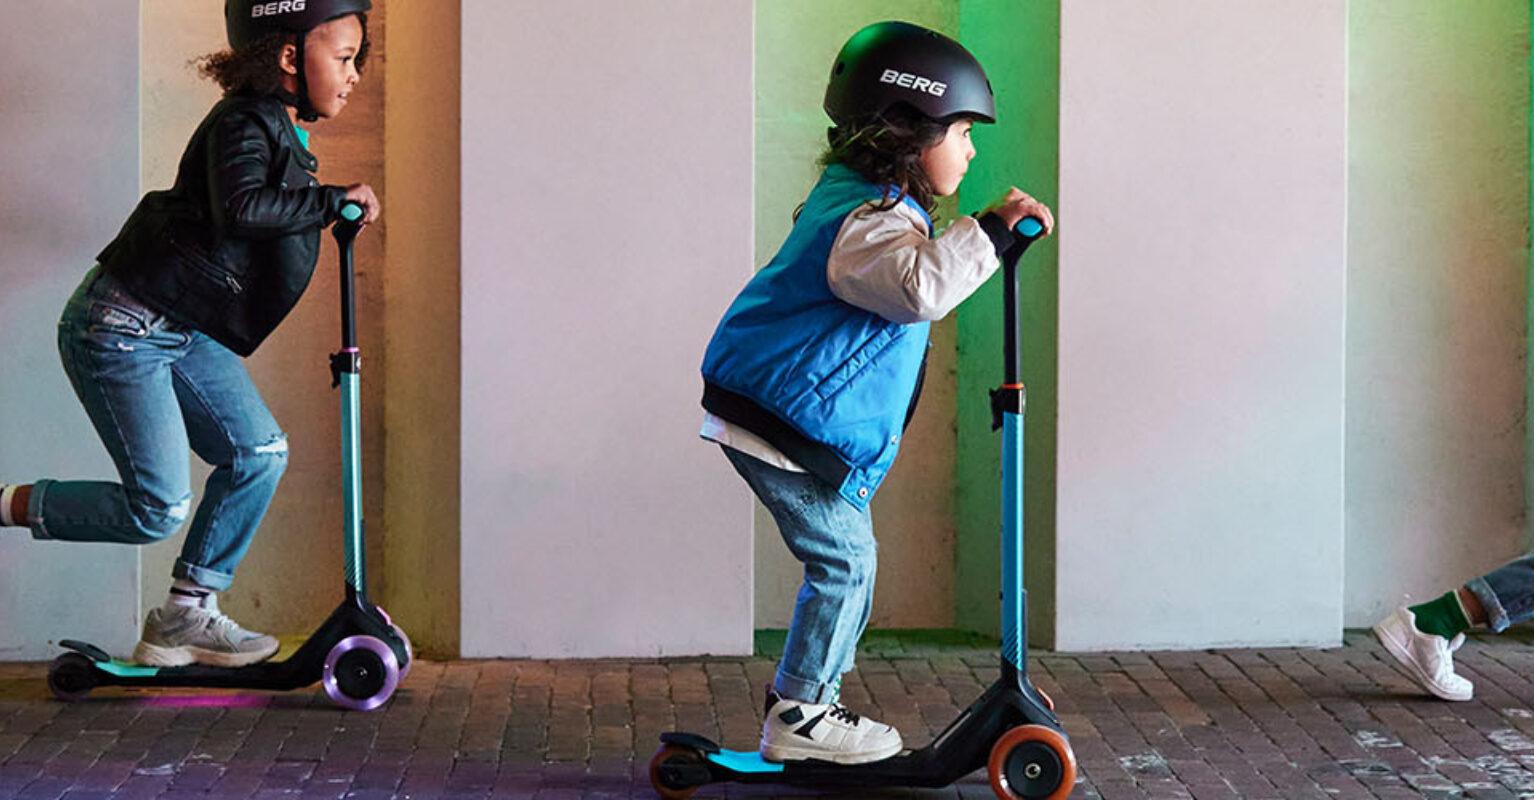 Estos 3 patinetes eléctricos para niños son la opción ideal para